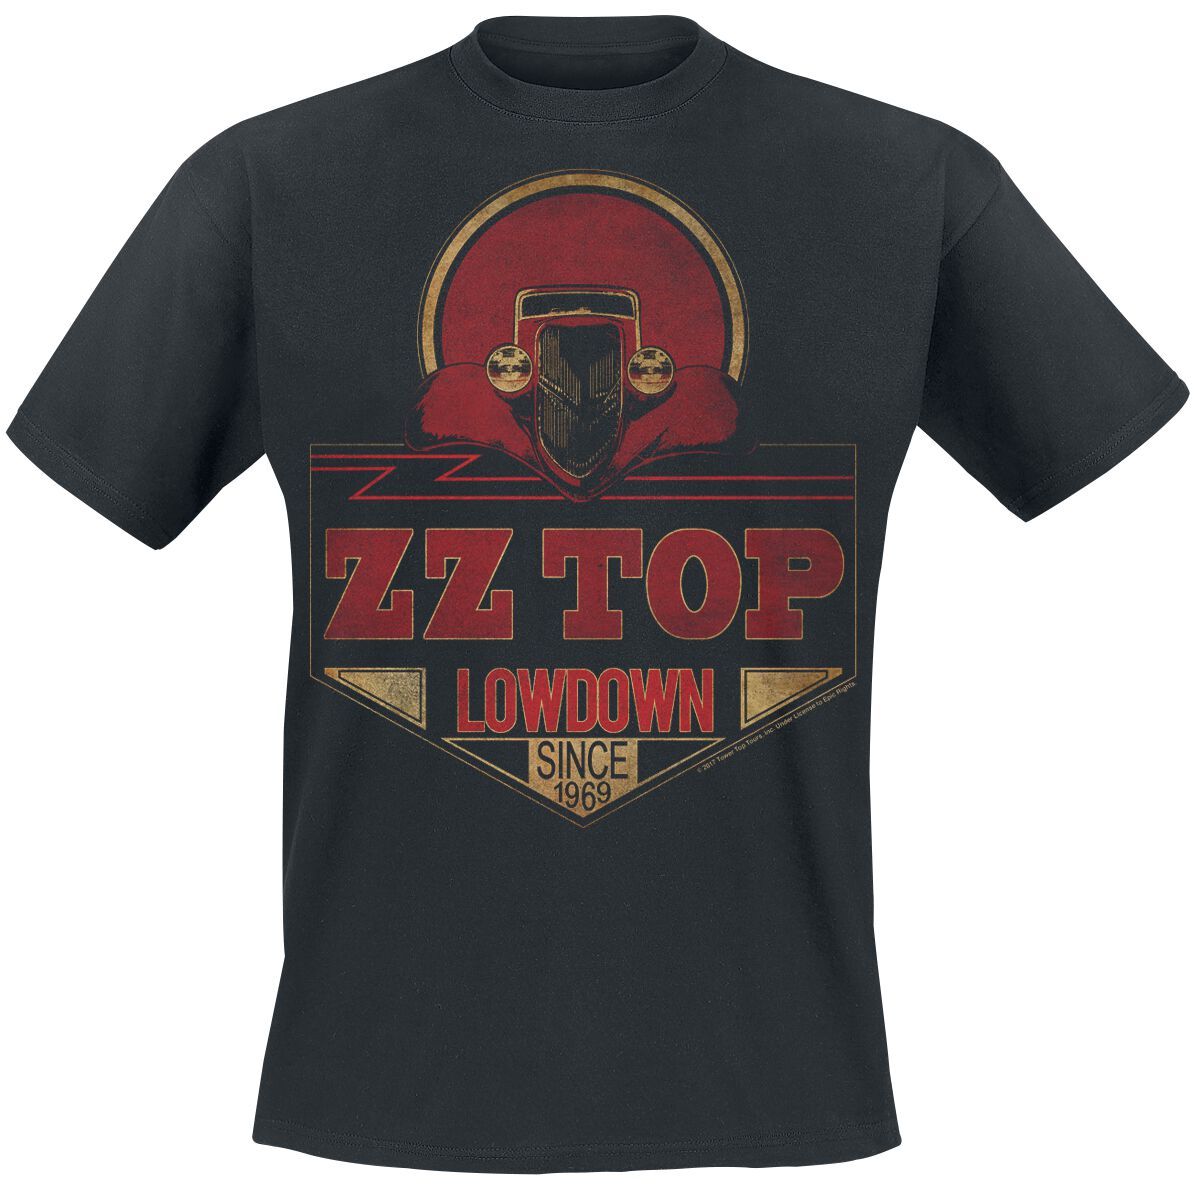 ZZ Top Lowdown Since 1969 T-Shirt schwarz in L